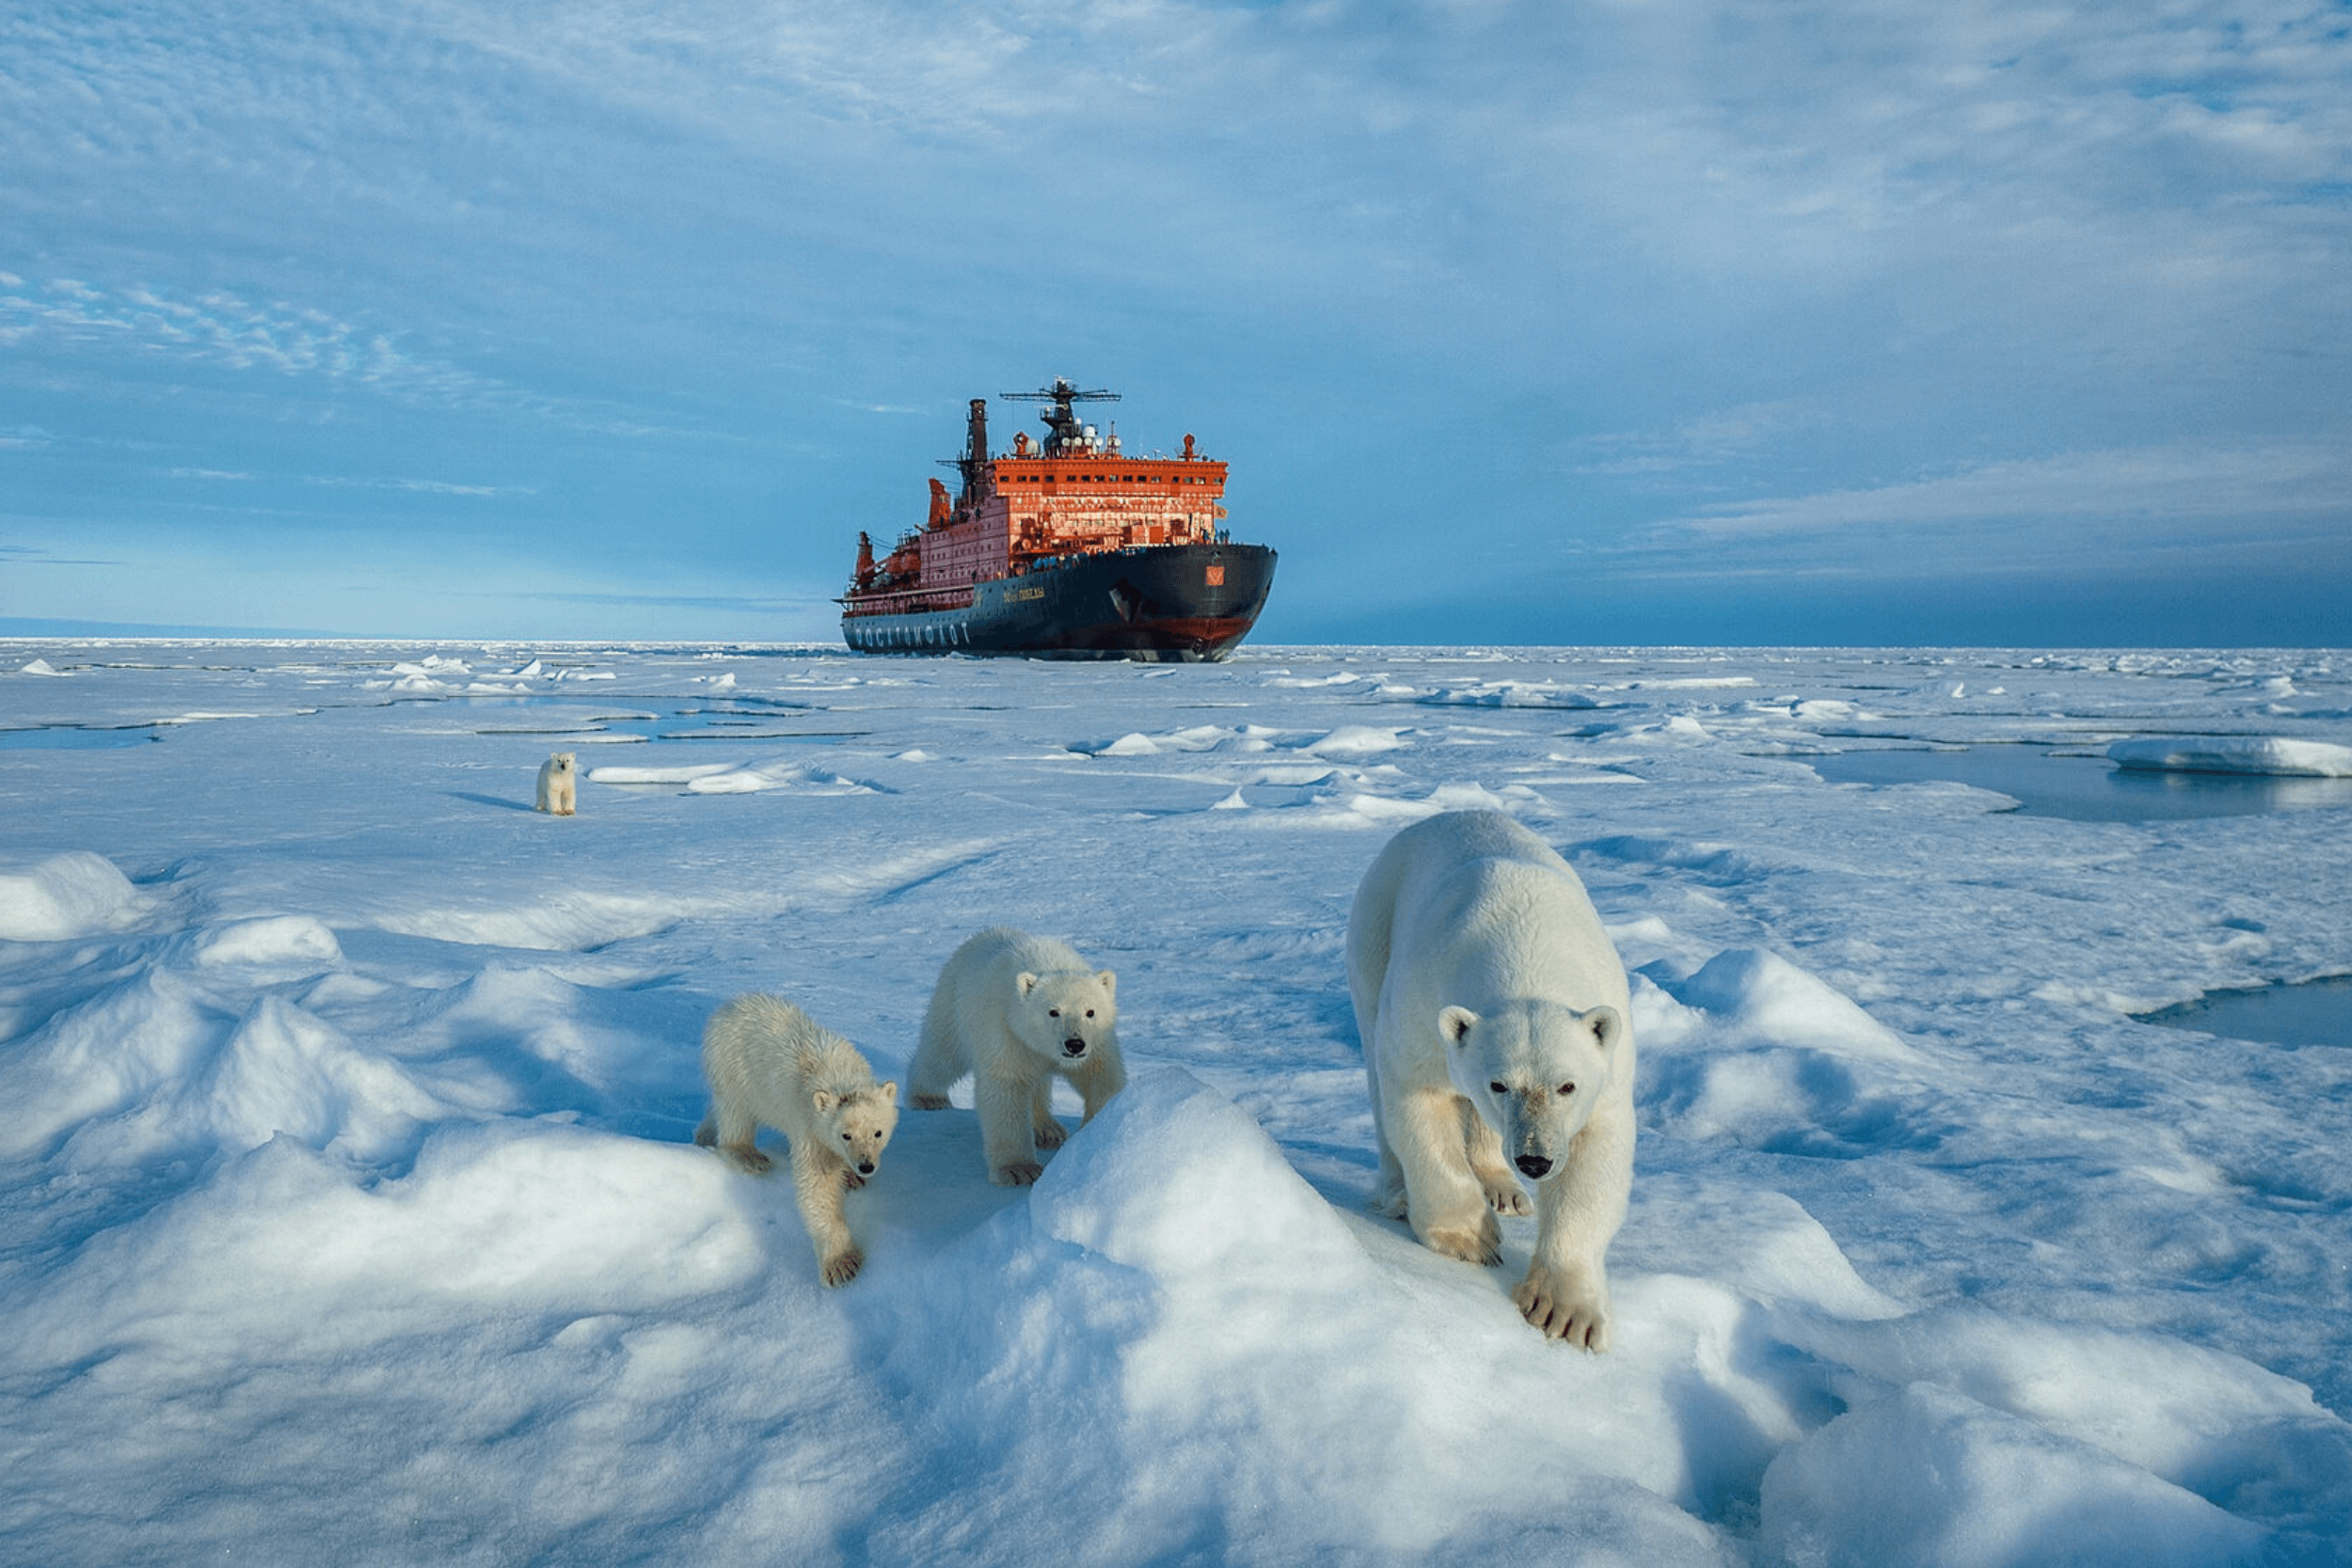 Arctic pole. Ледокол Северный полюс. Мурманск Северный полюс Мурманск. Северный полюс Северный Ледовитый океан. Круиз на Северный полюс на атомном ледоколе.